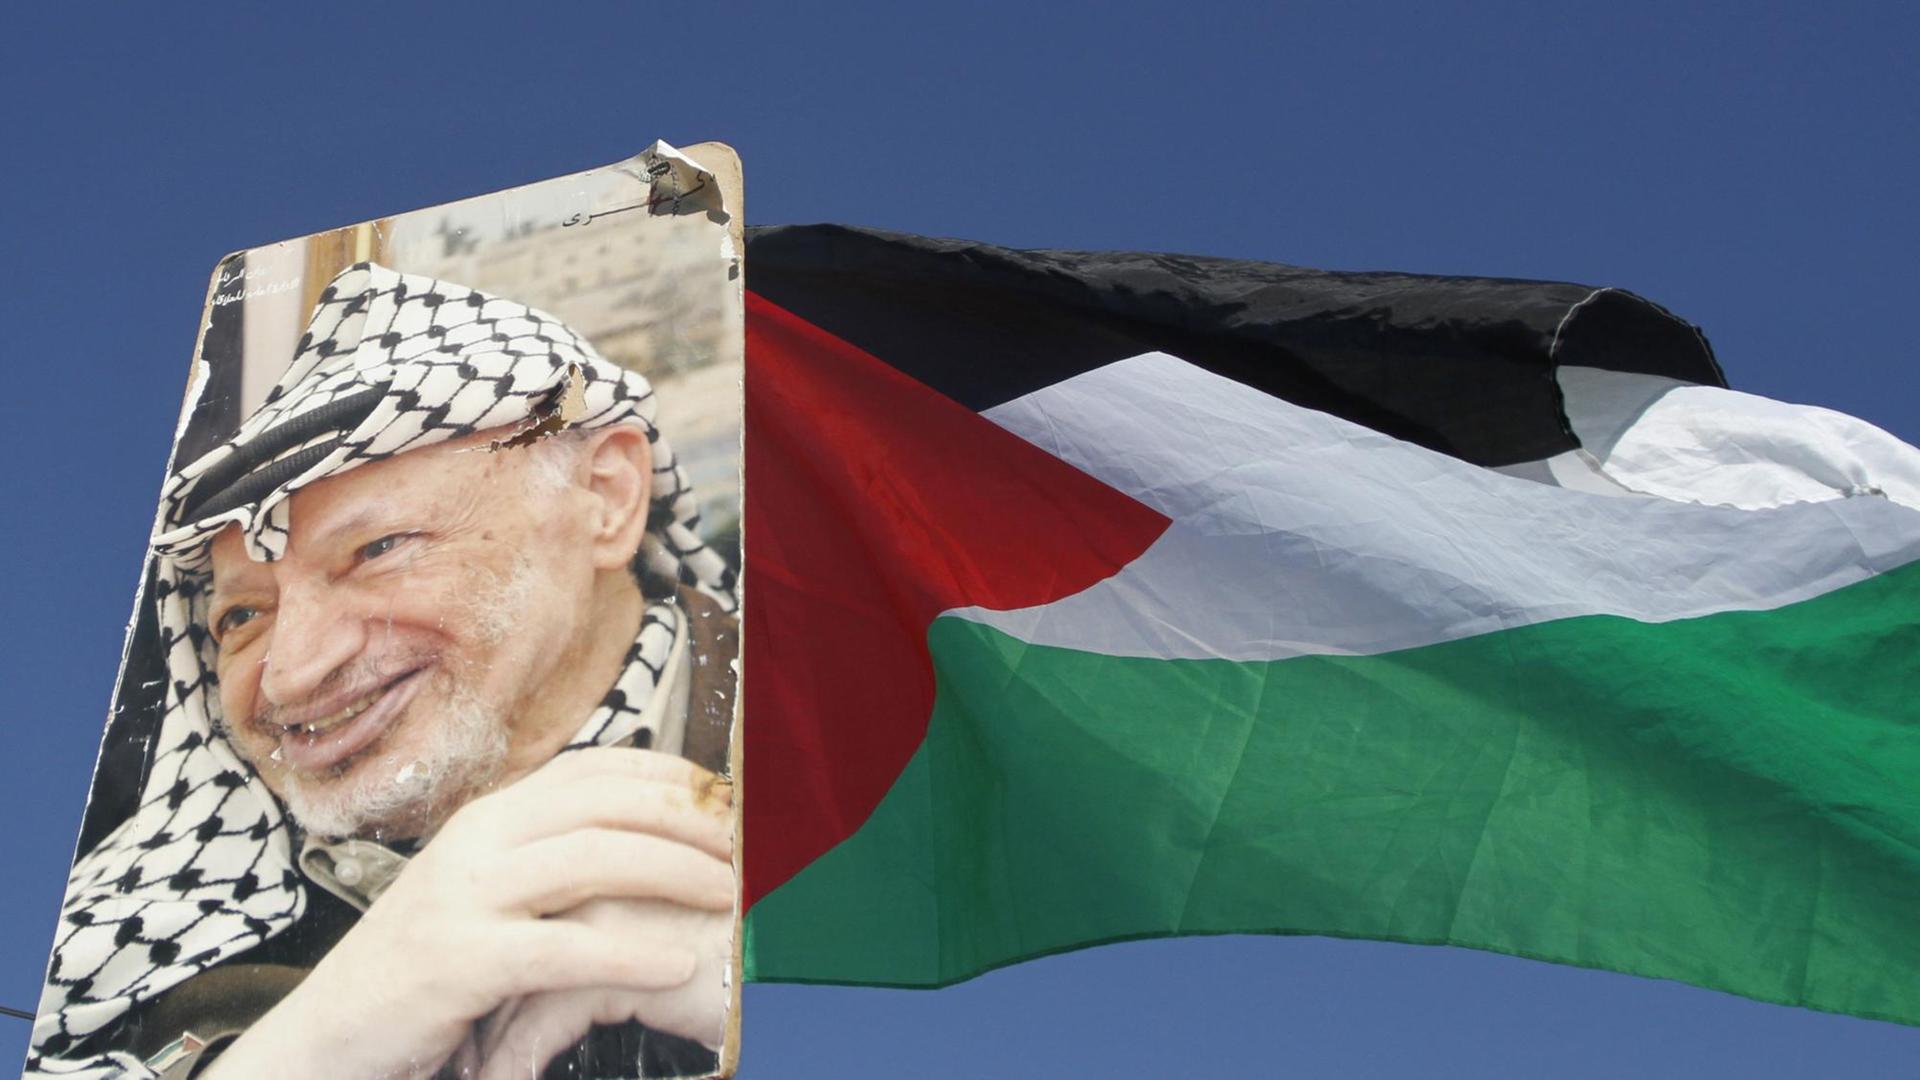 Ein Porträt von Palästinenserpräsident Arafat neben einer palästinensischen Flagge.